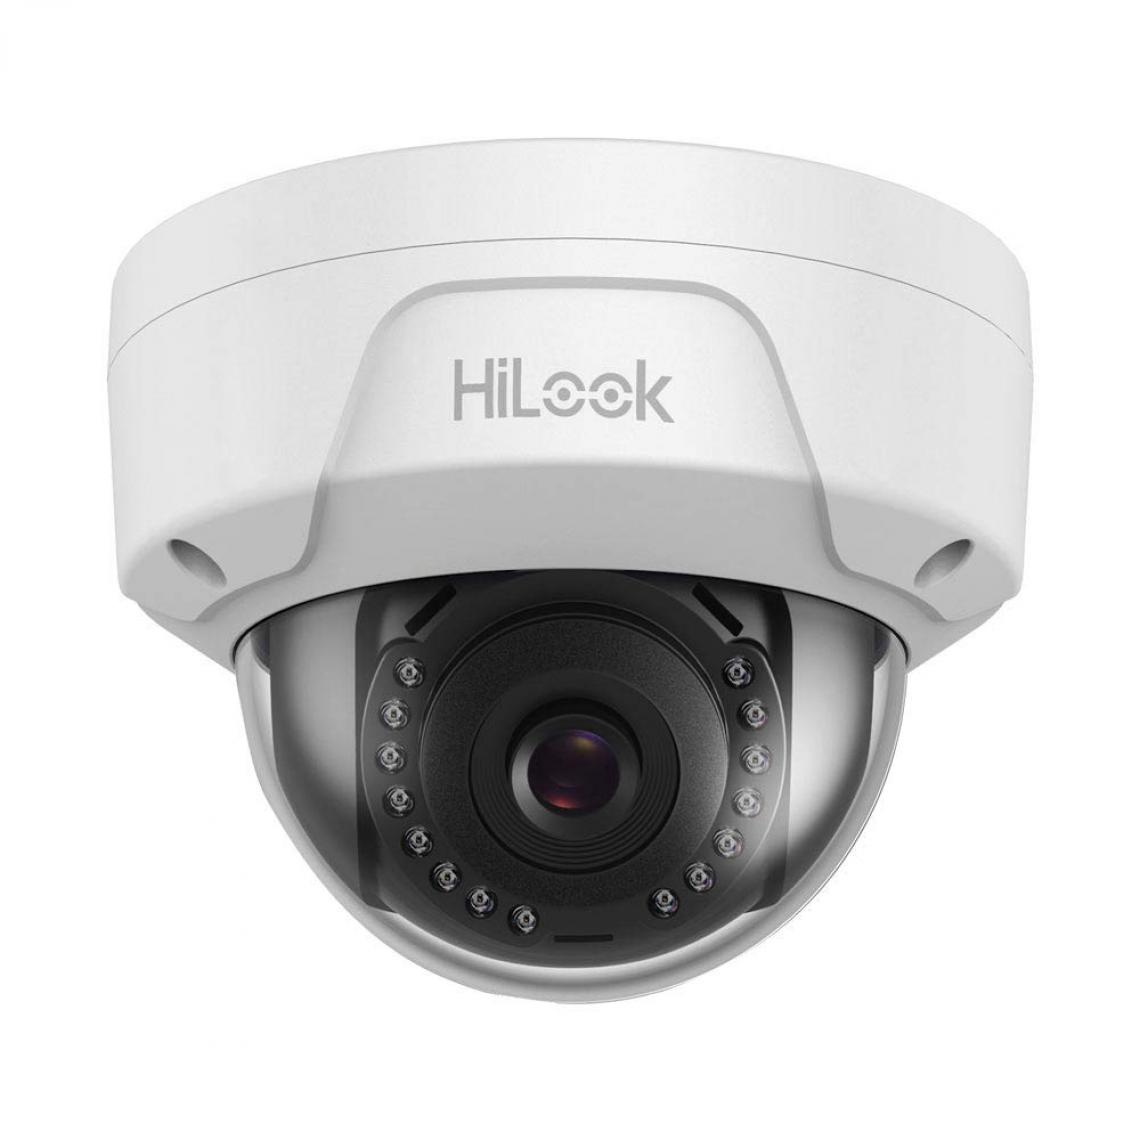 Inconnu - HiLook IPC-D150H-M hld150 Ethernet IP Caméra de surveillance 2560 x 1920 pixels - Autres accessoires smartphone